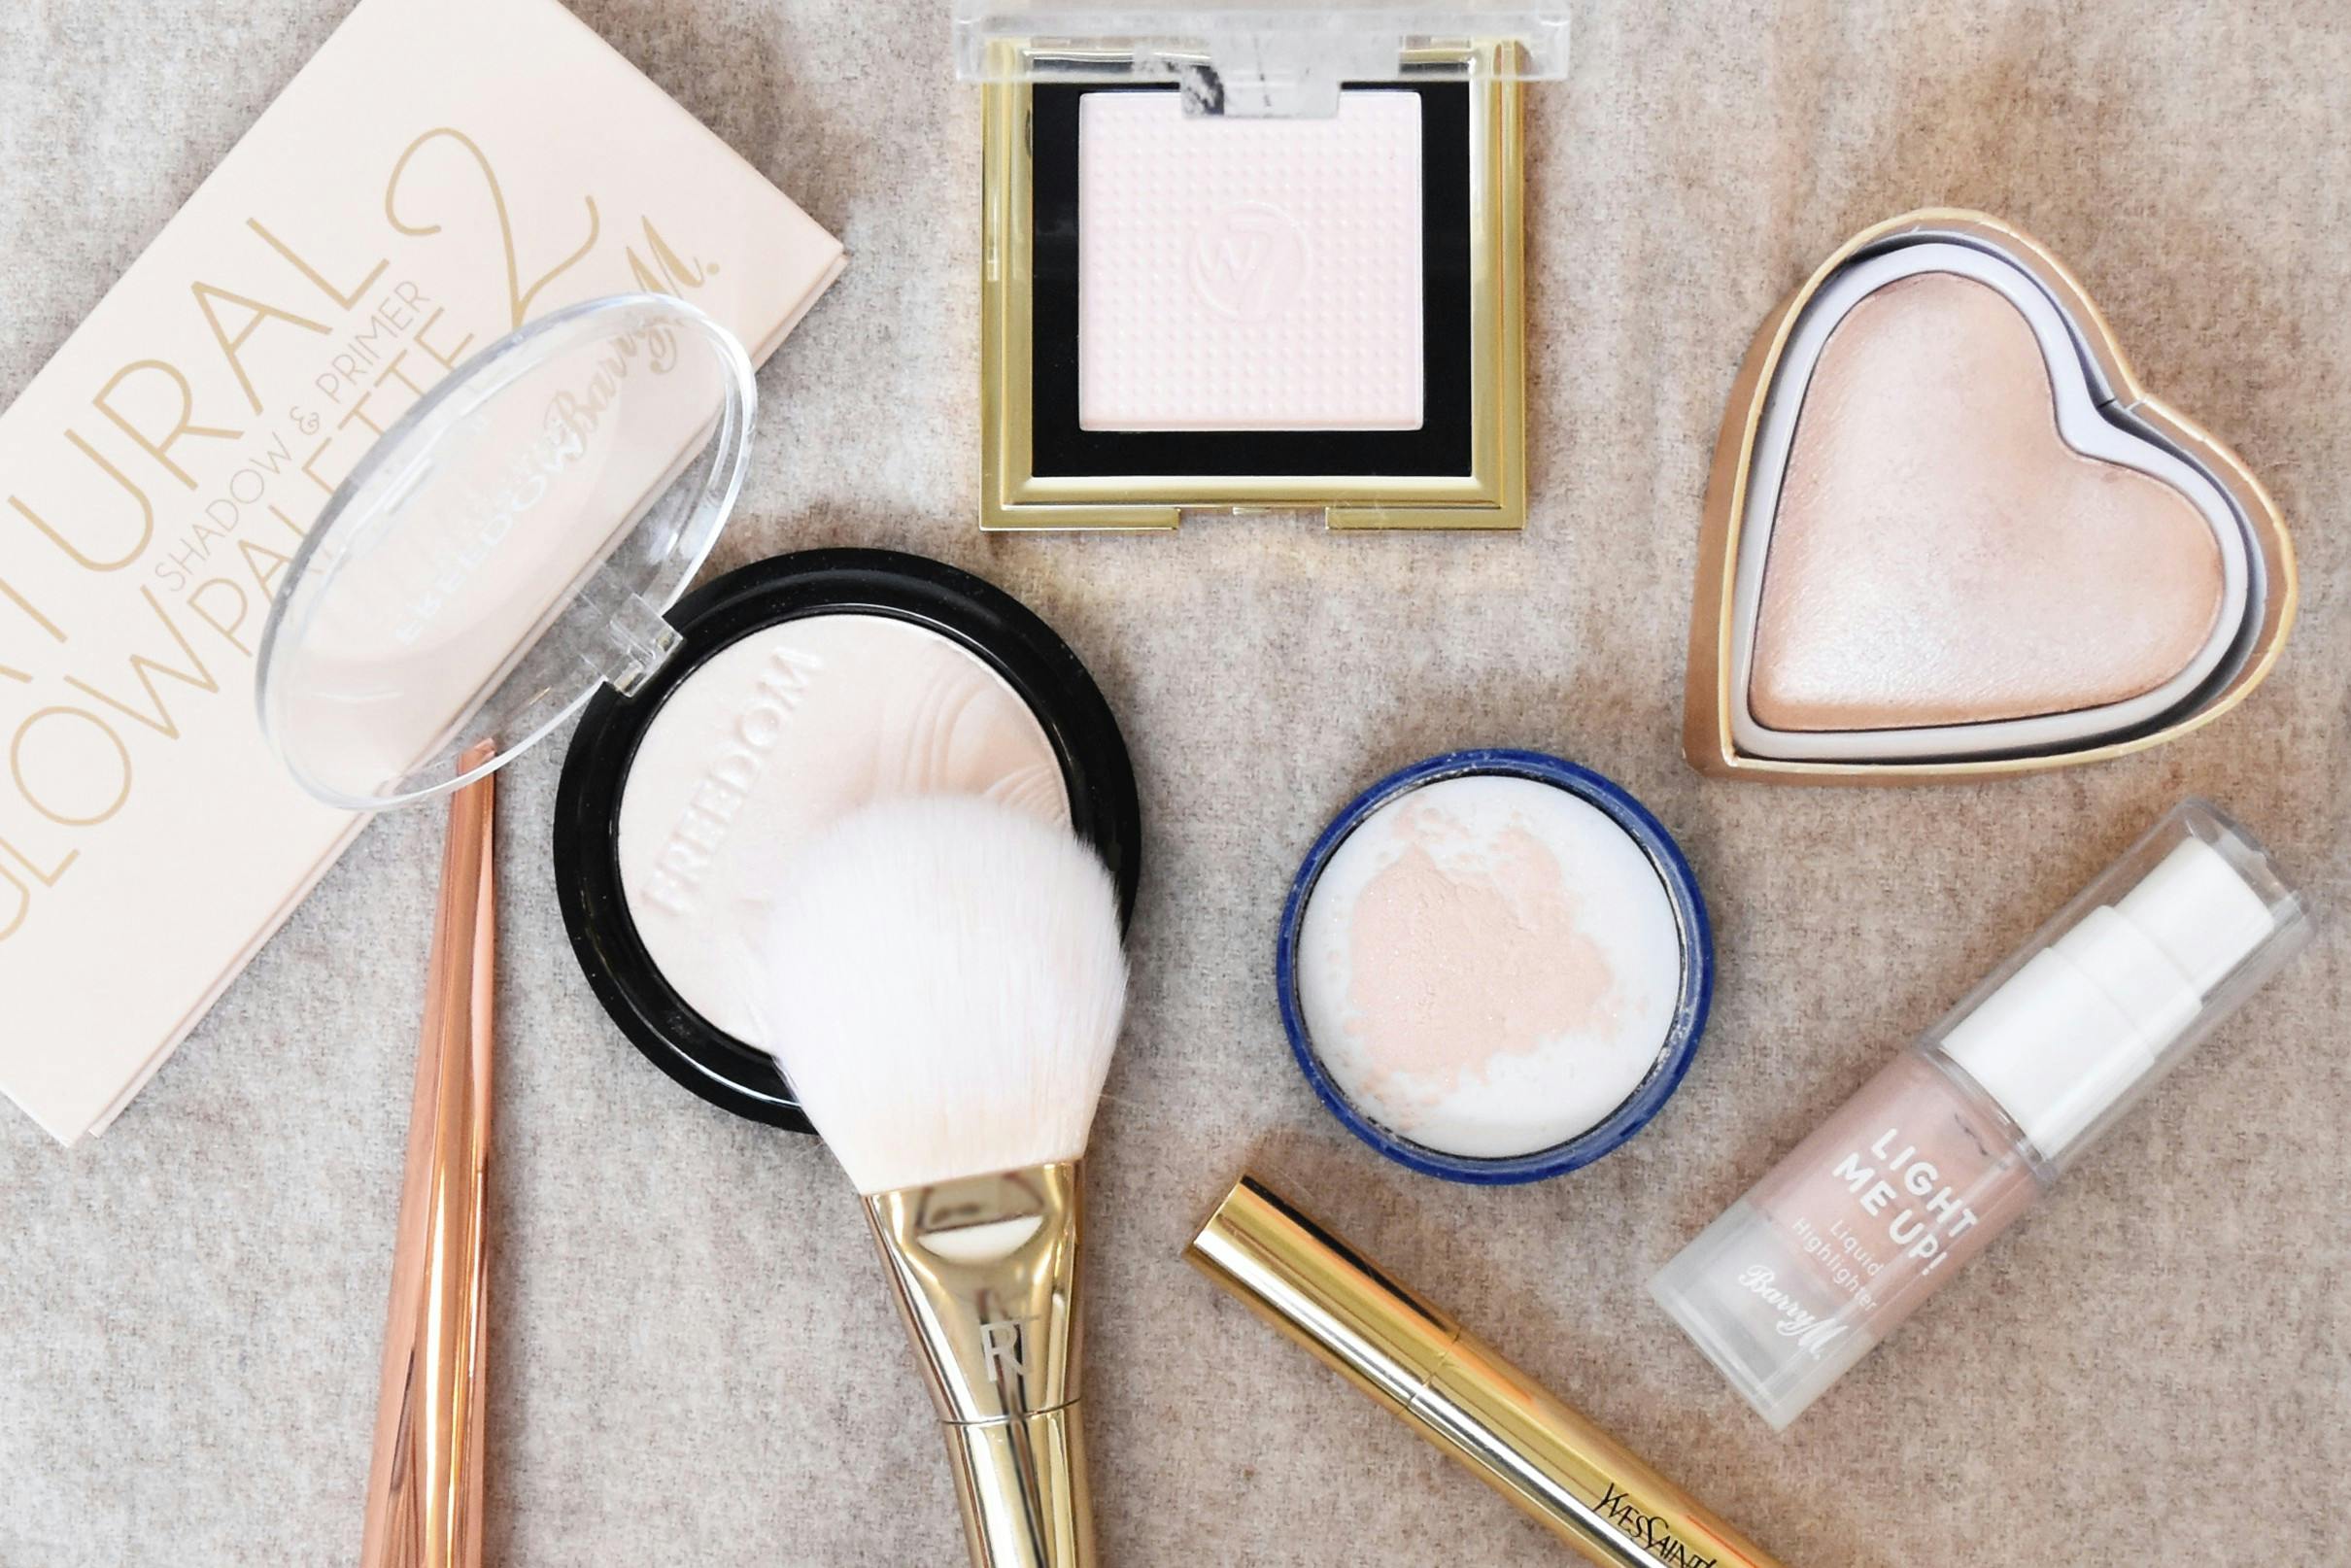 acceptabel nitrogen omfavne Highlighter - Guide til den perfekte makeup